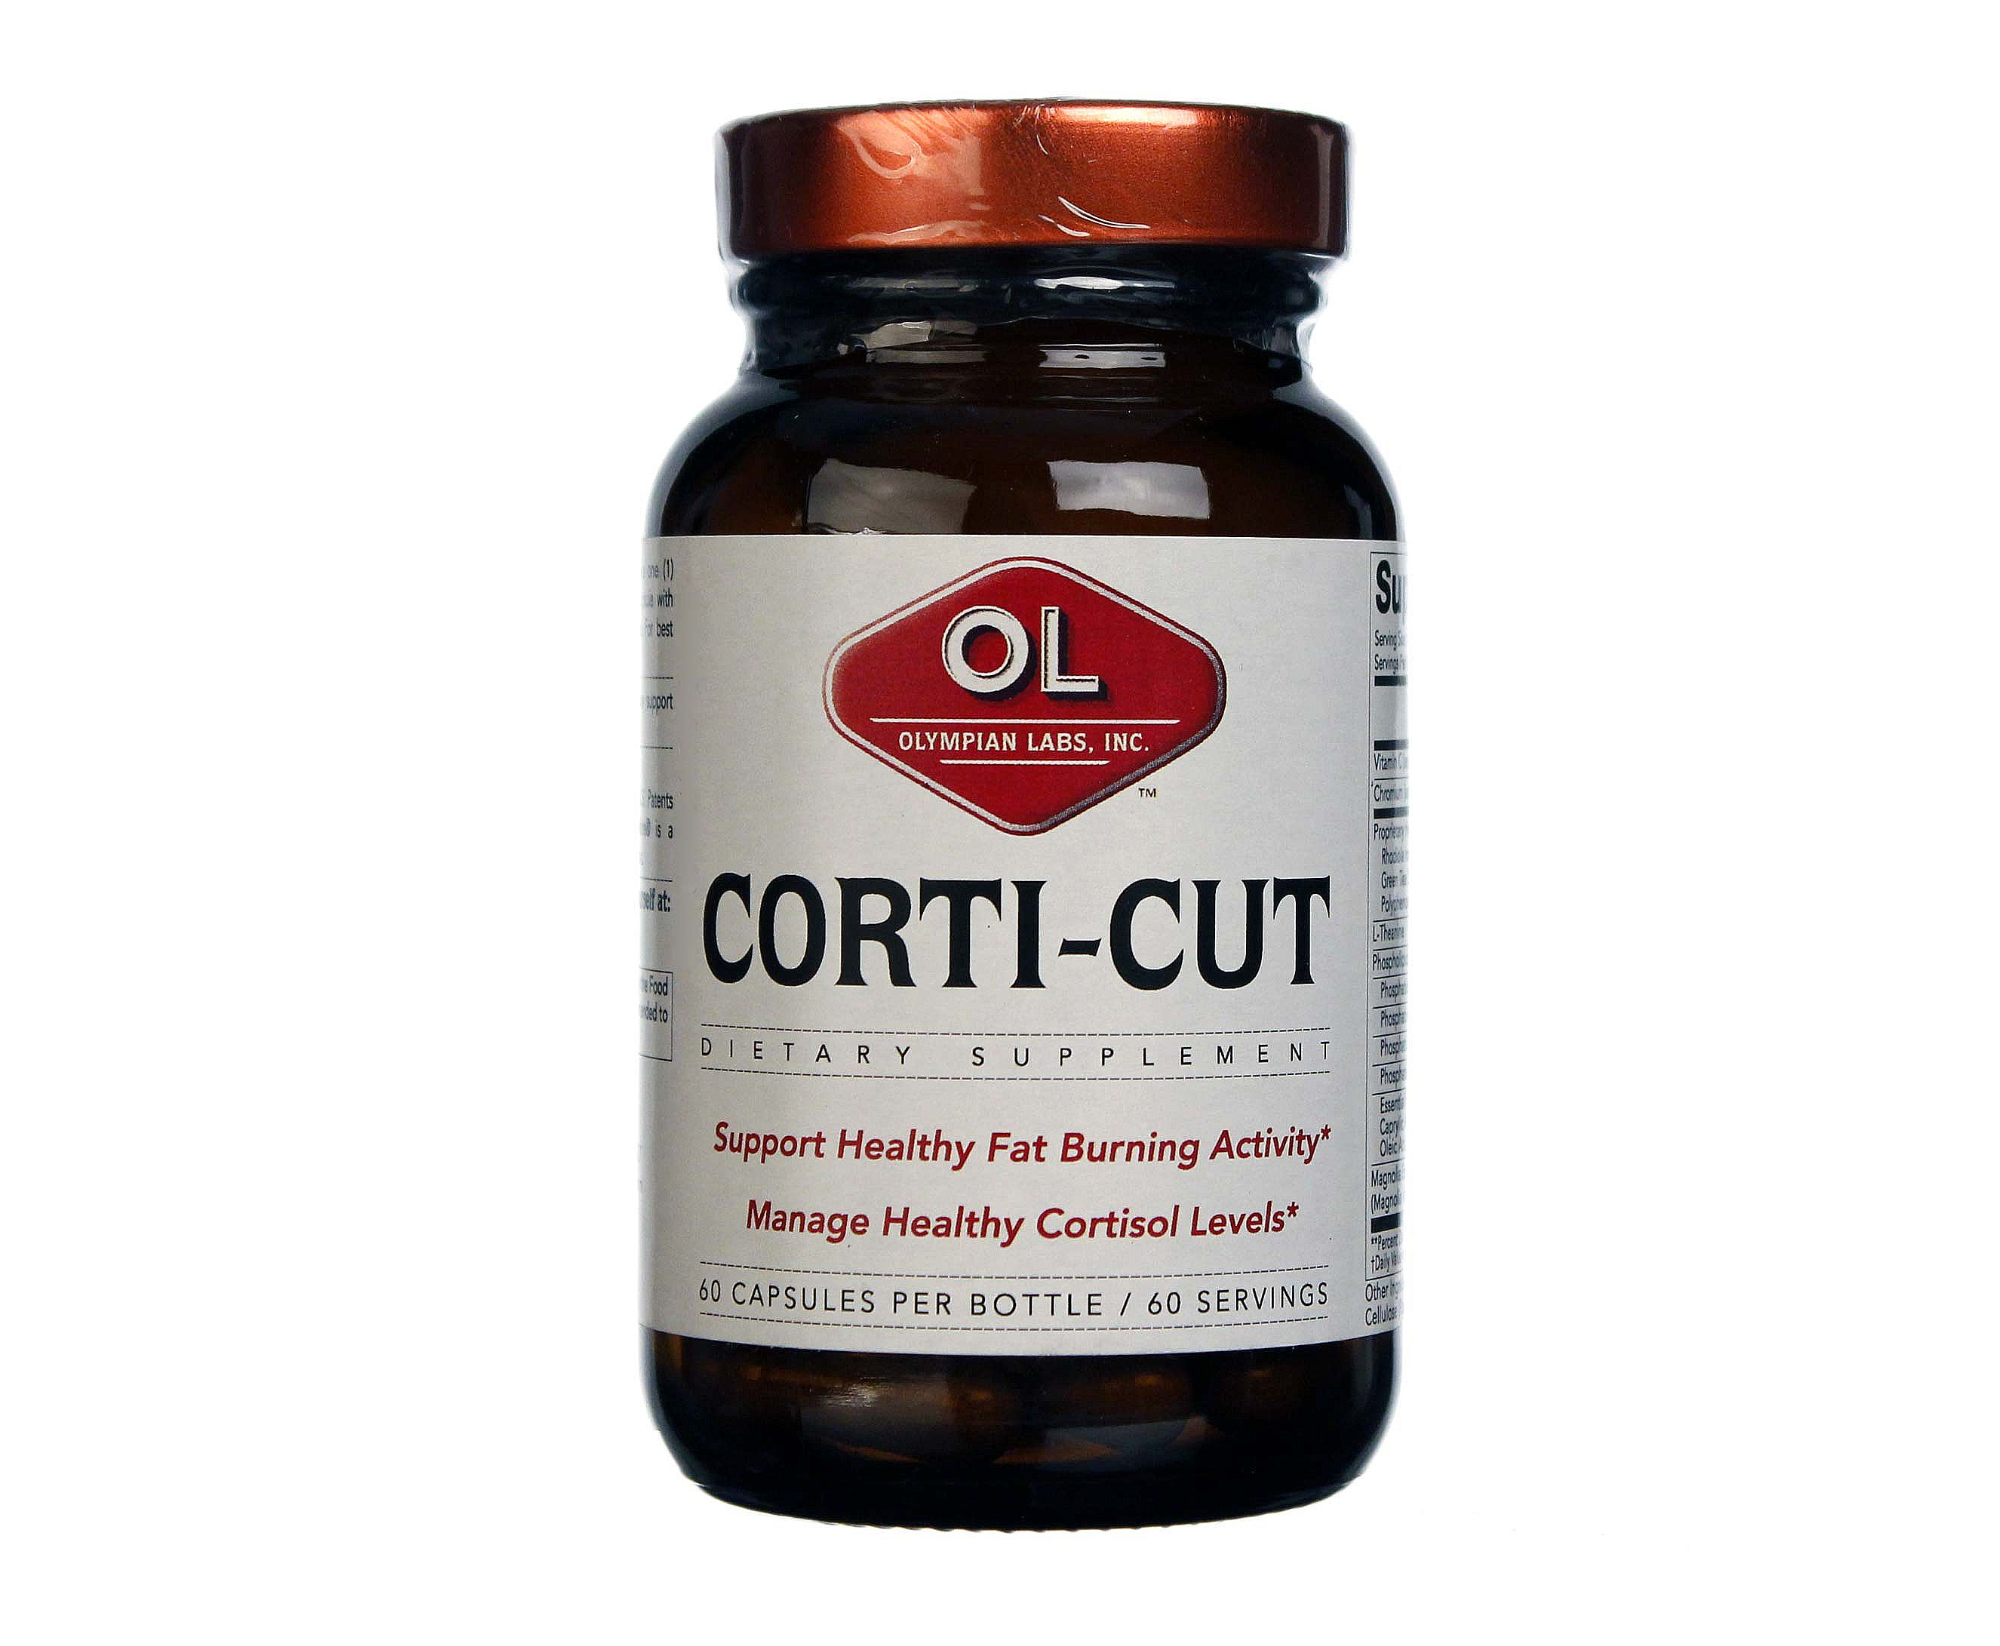 Corti-Cut